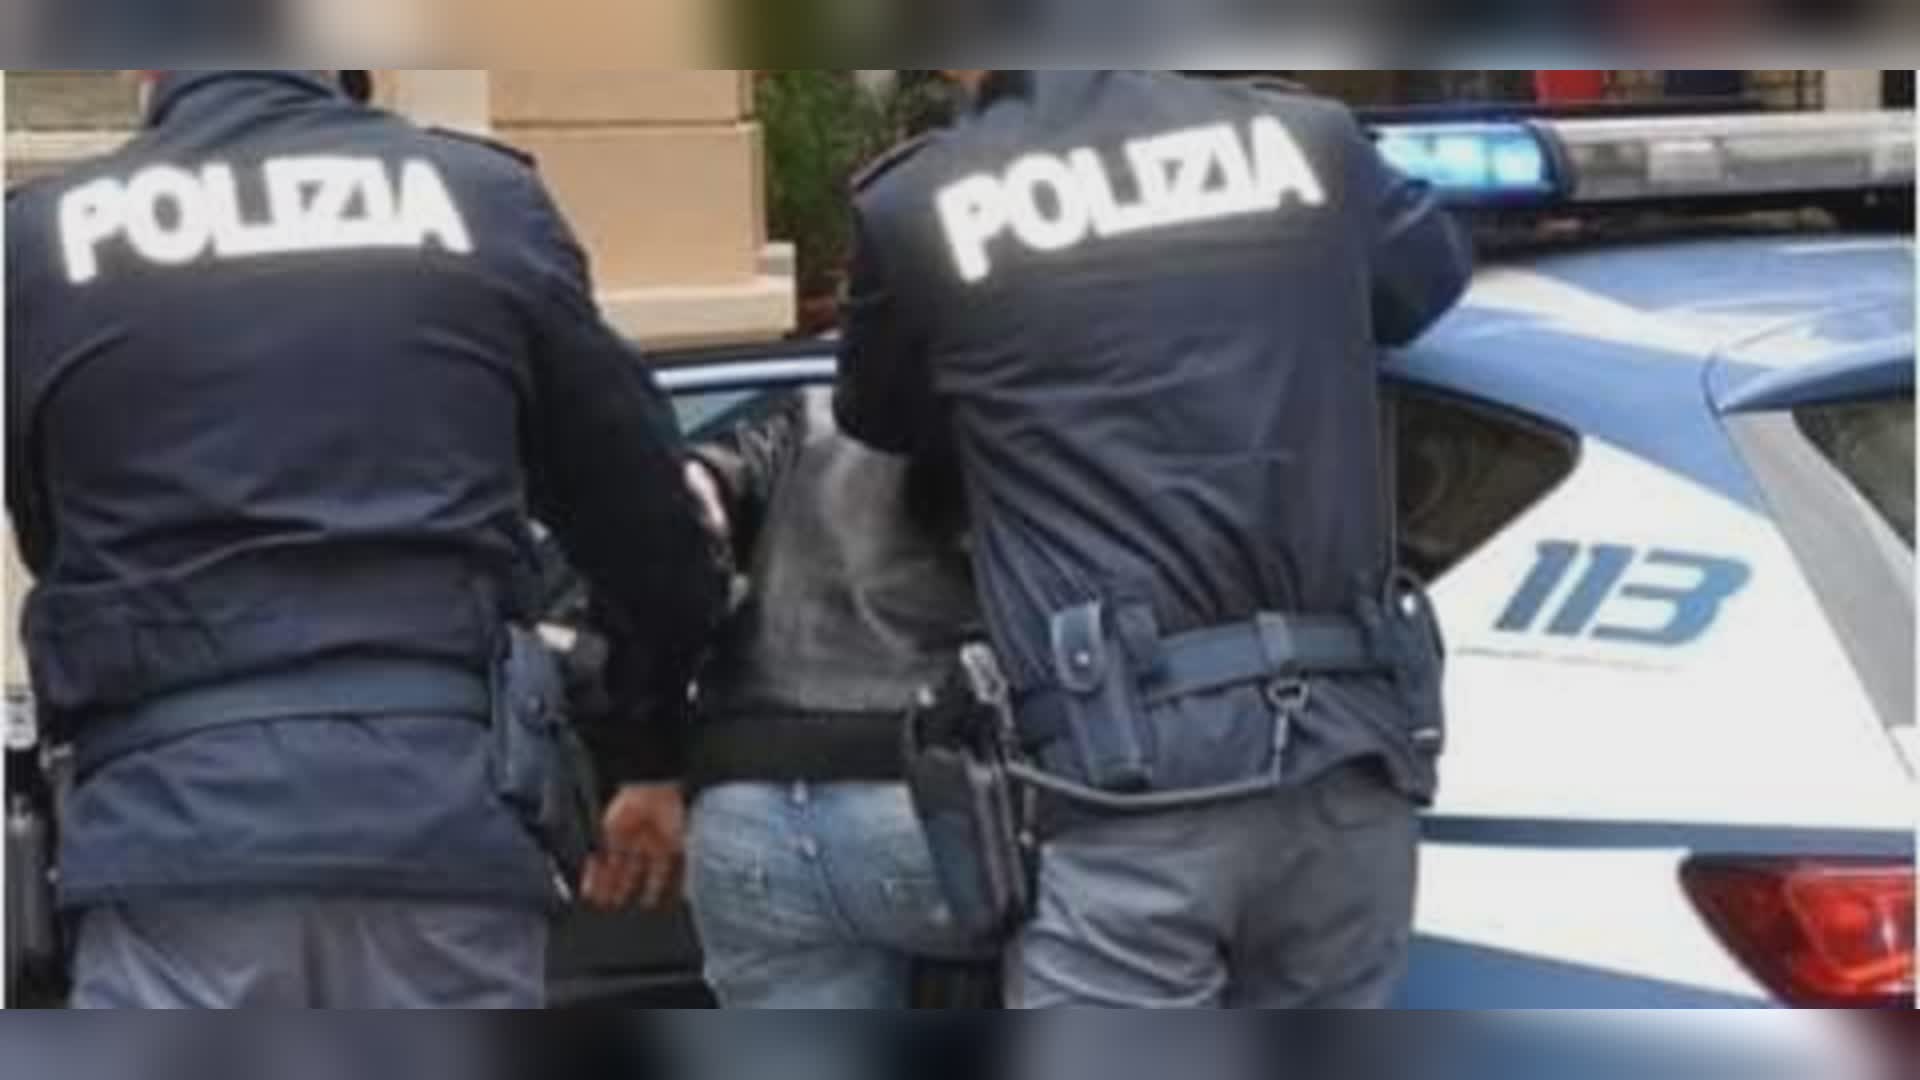 Genova, due minori strappano una collanina a un coetaneo: arrestati dalla polizia per furto aggravato